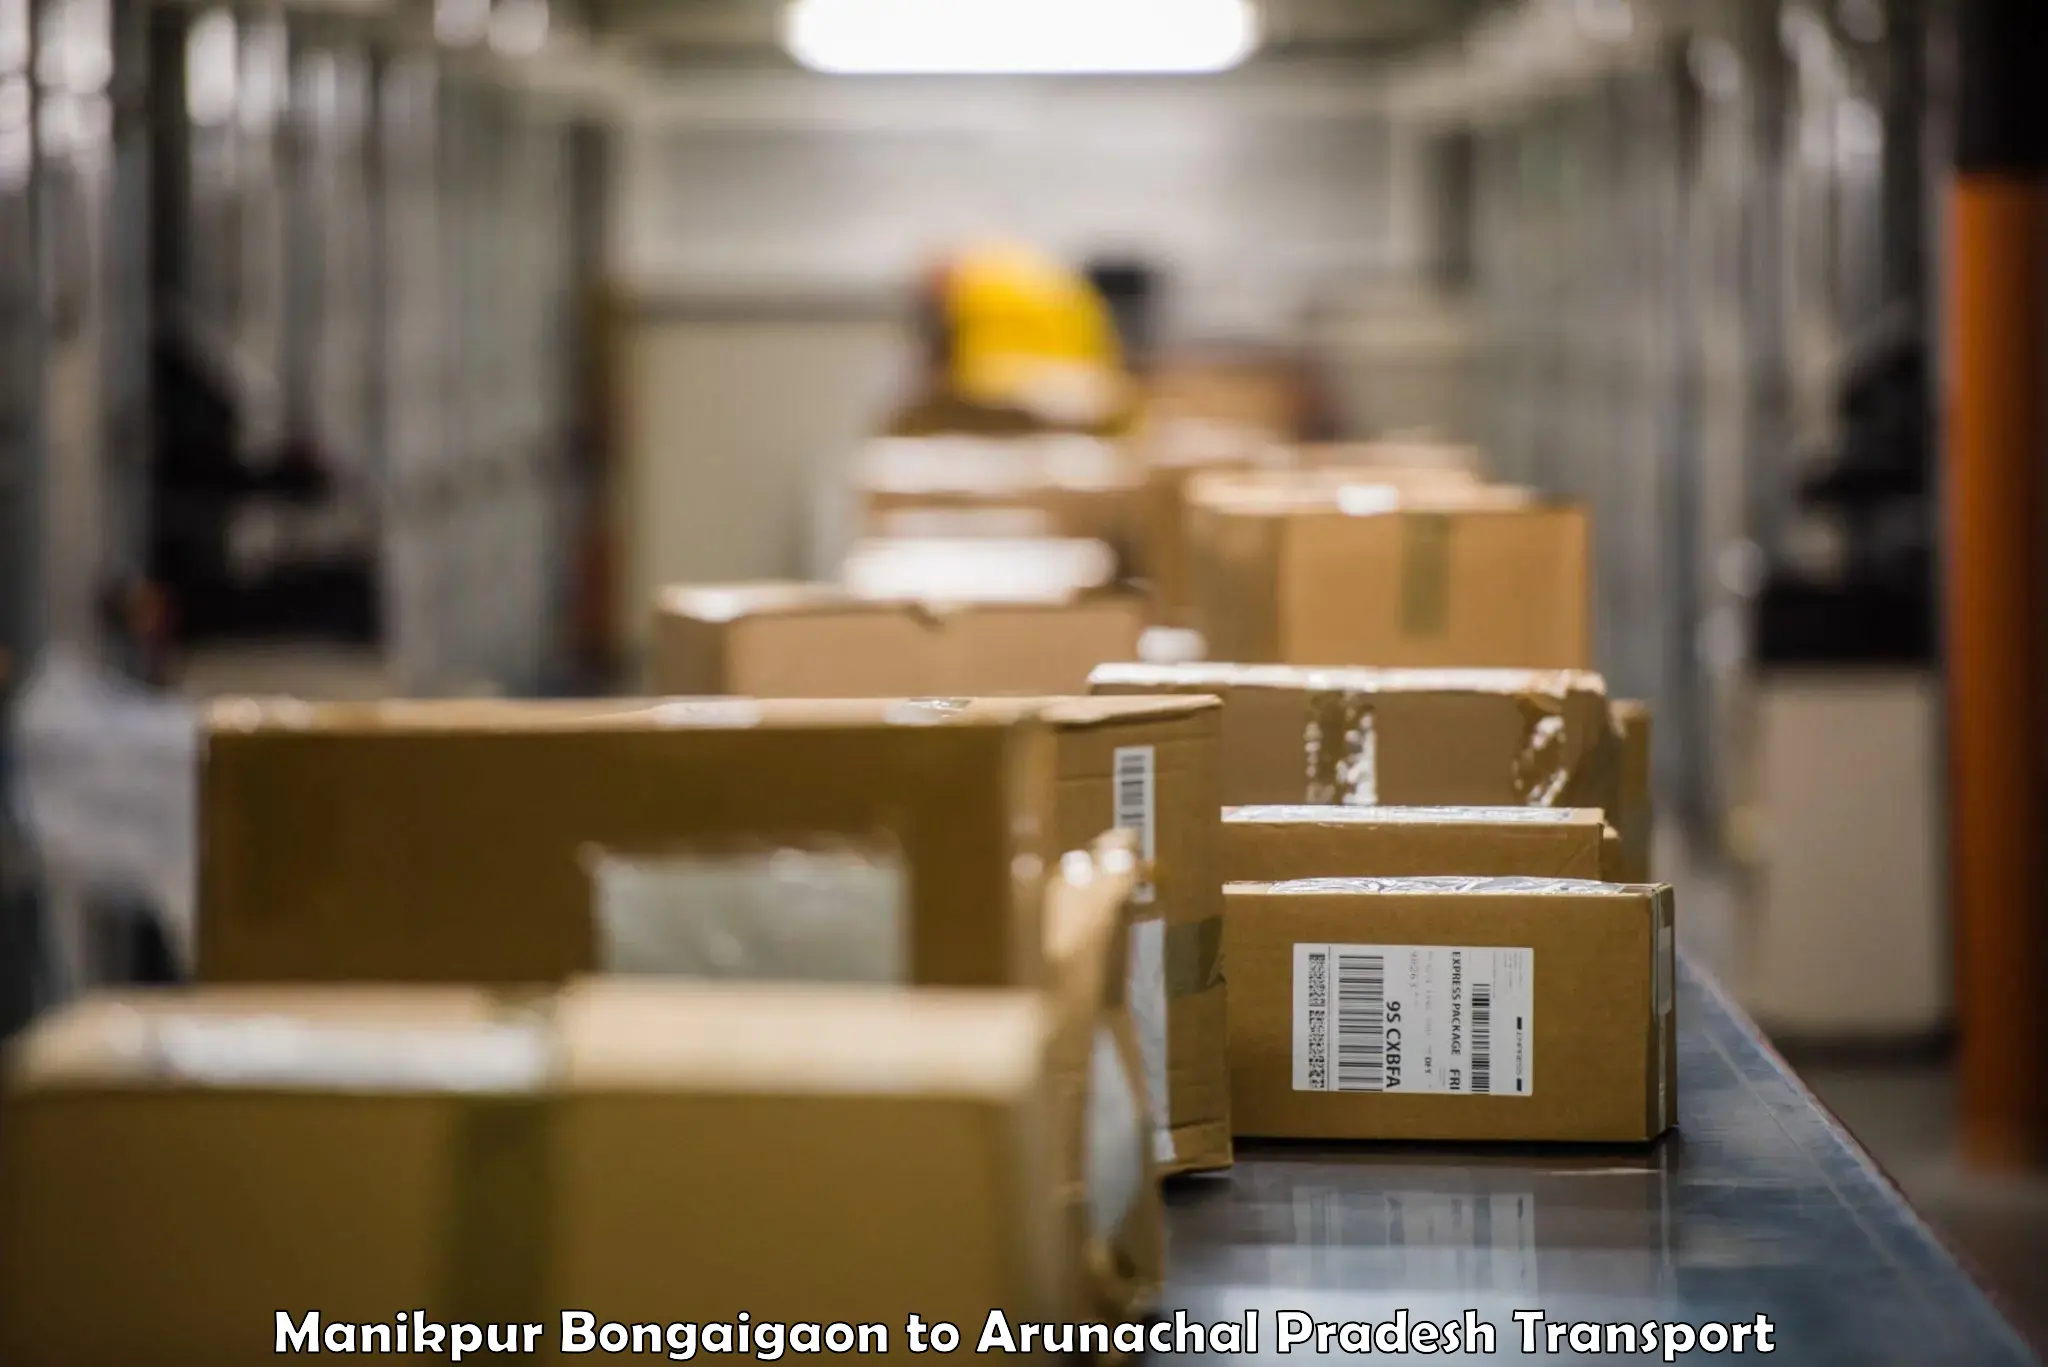 Shipping partner Manikpur Bongaigaon to Upper Siang